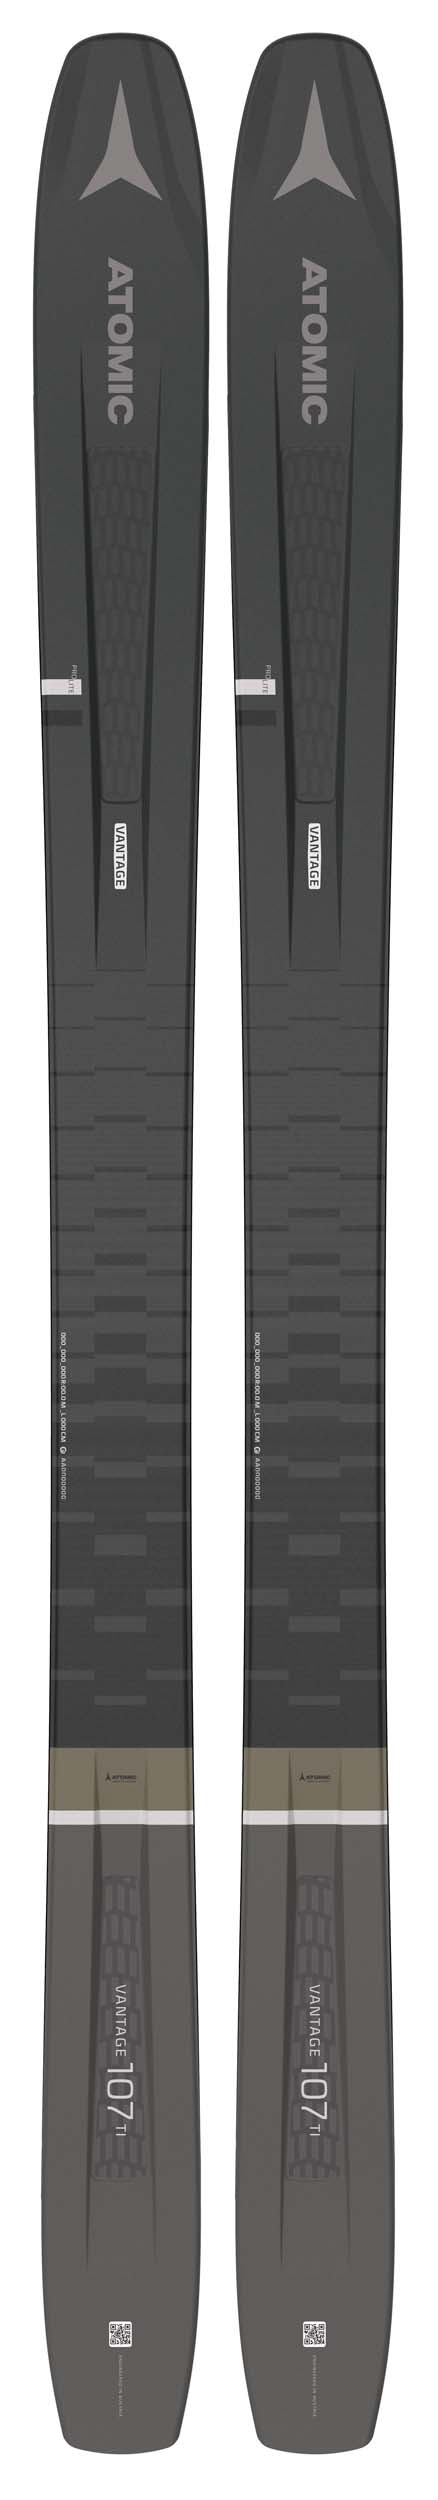 Atomic 2021 Vantage 107 Ti Skis (Without Bindings / Flat) NEW !! 189cm